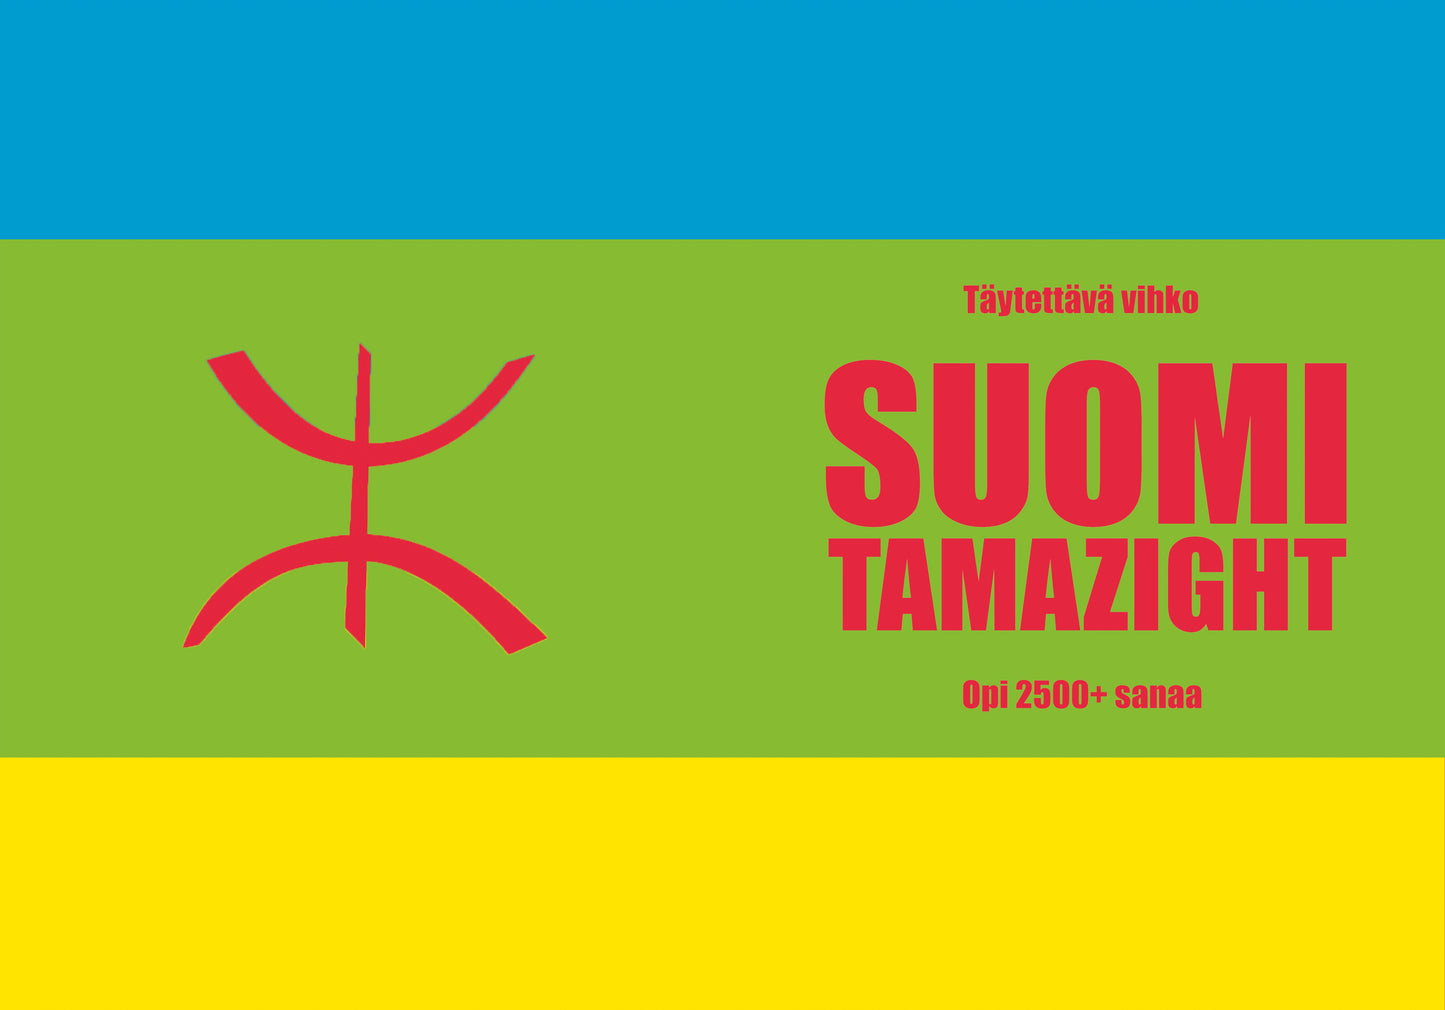 Suomi-tamazight täytettävä vihko